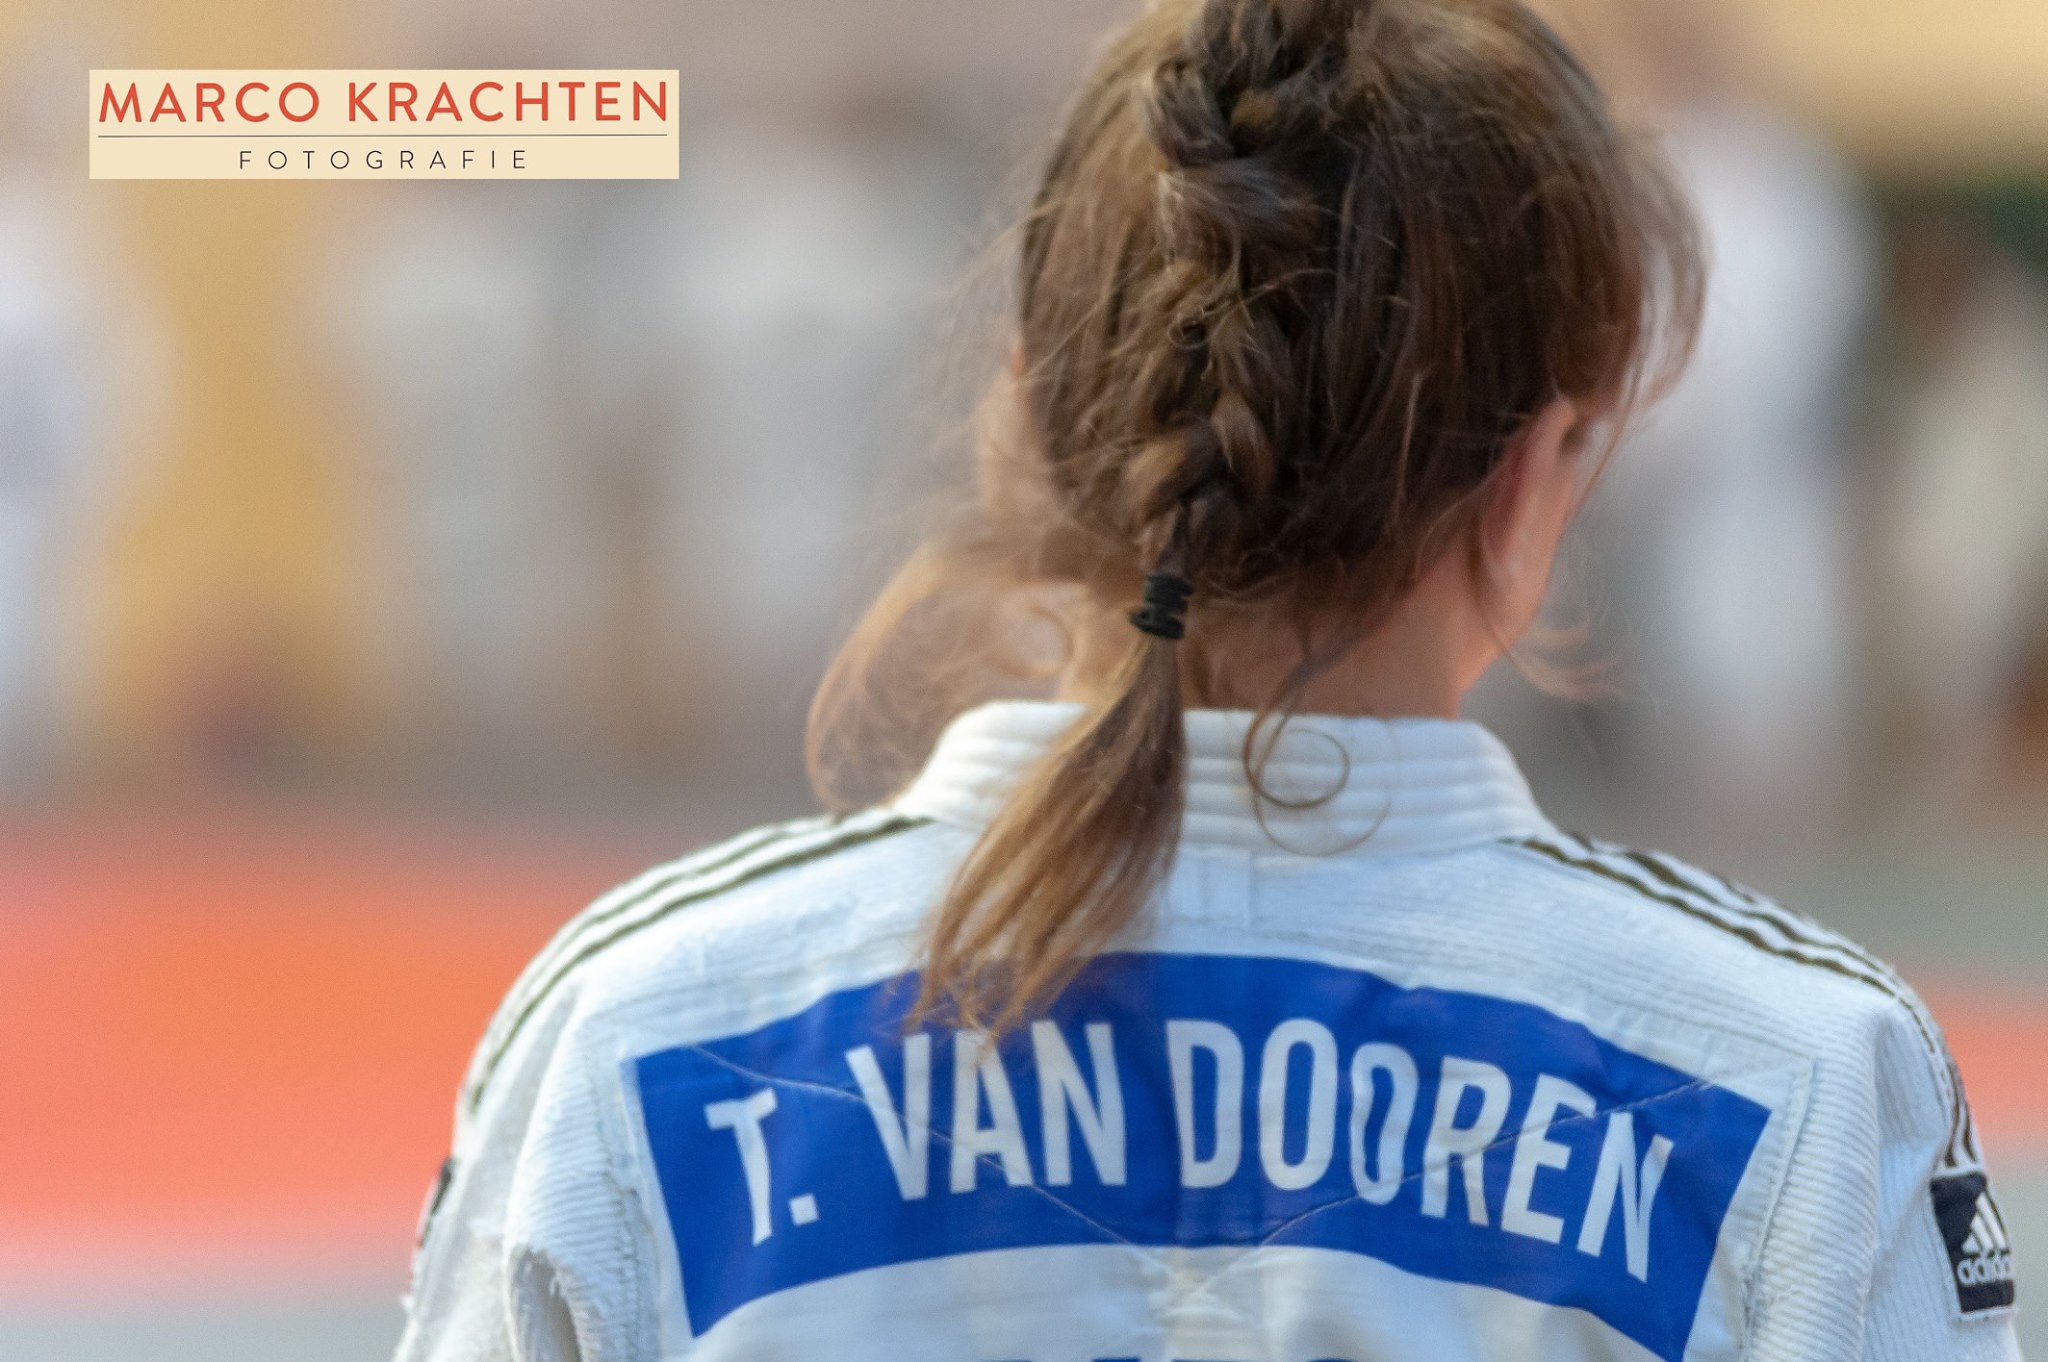 Tess Van Dooren